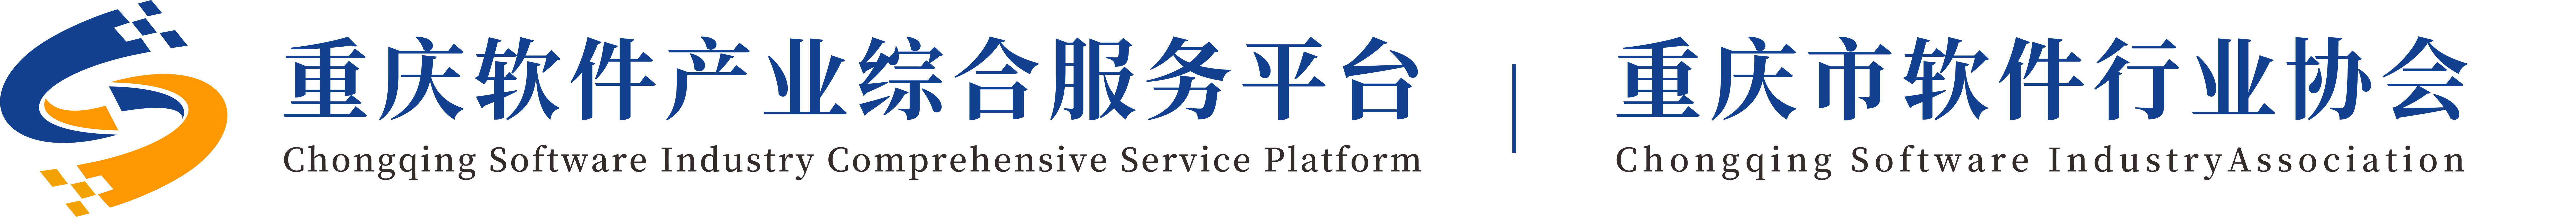 重庆软件产业综合服务平台 、bet3365标准版